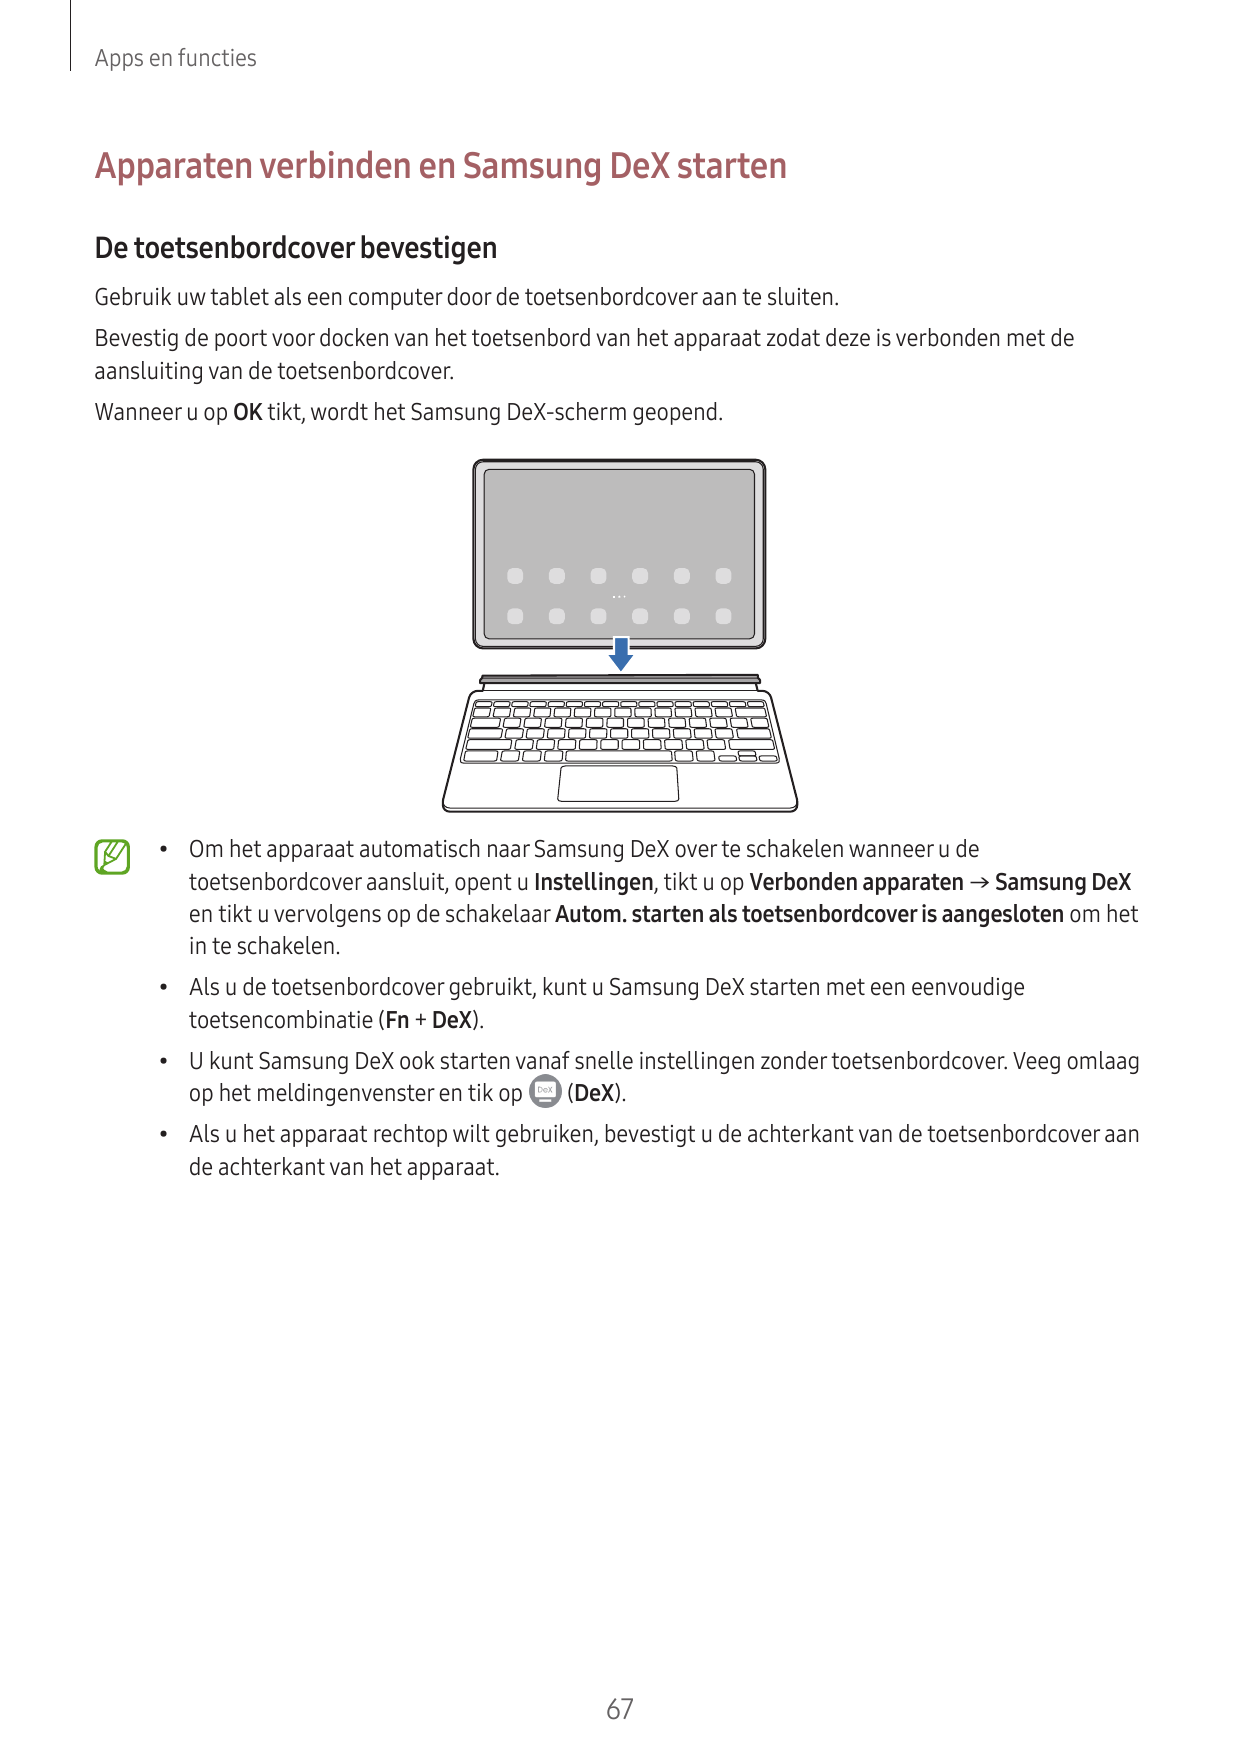 Apps en functiesApparaten verbinden en Samsung DeX startenDe toetsenbordcover bevestigenGebruik uw tablet als een computer door 